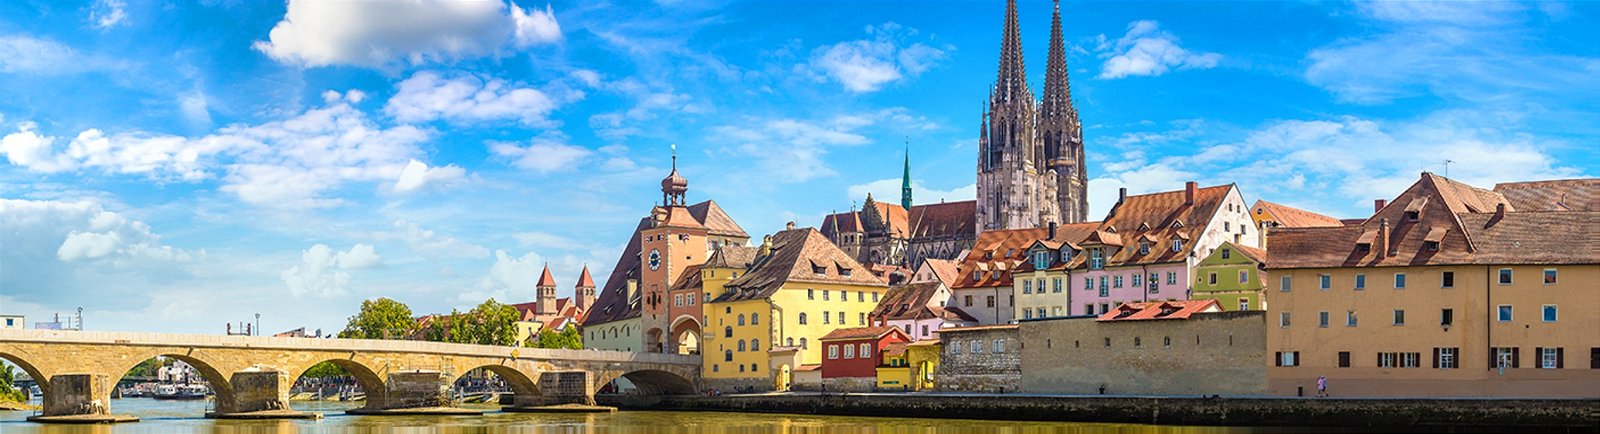 Städtereise nach Regensburg